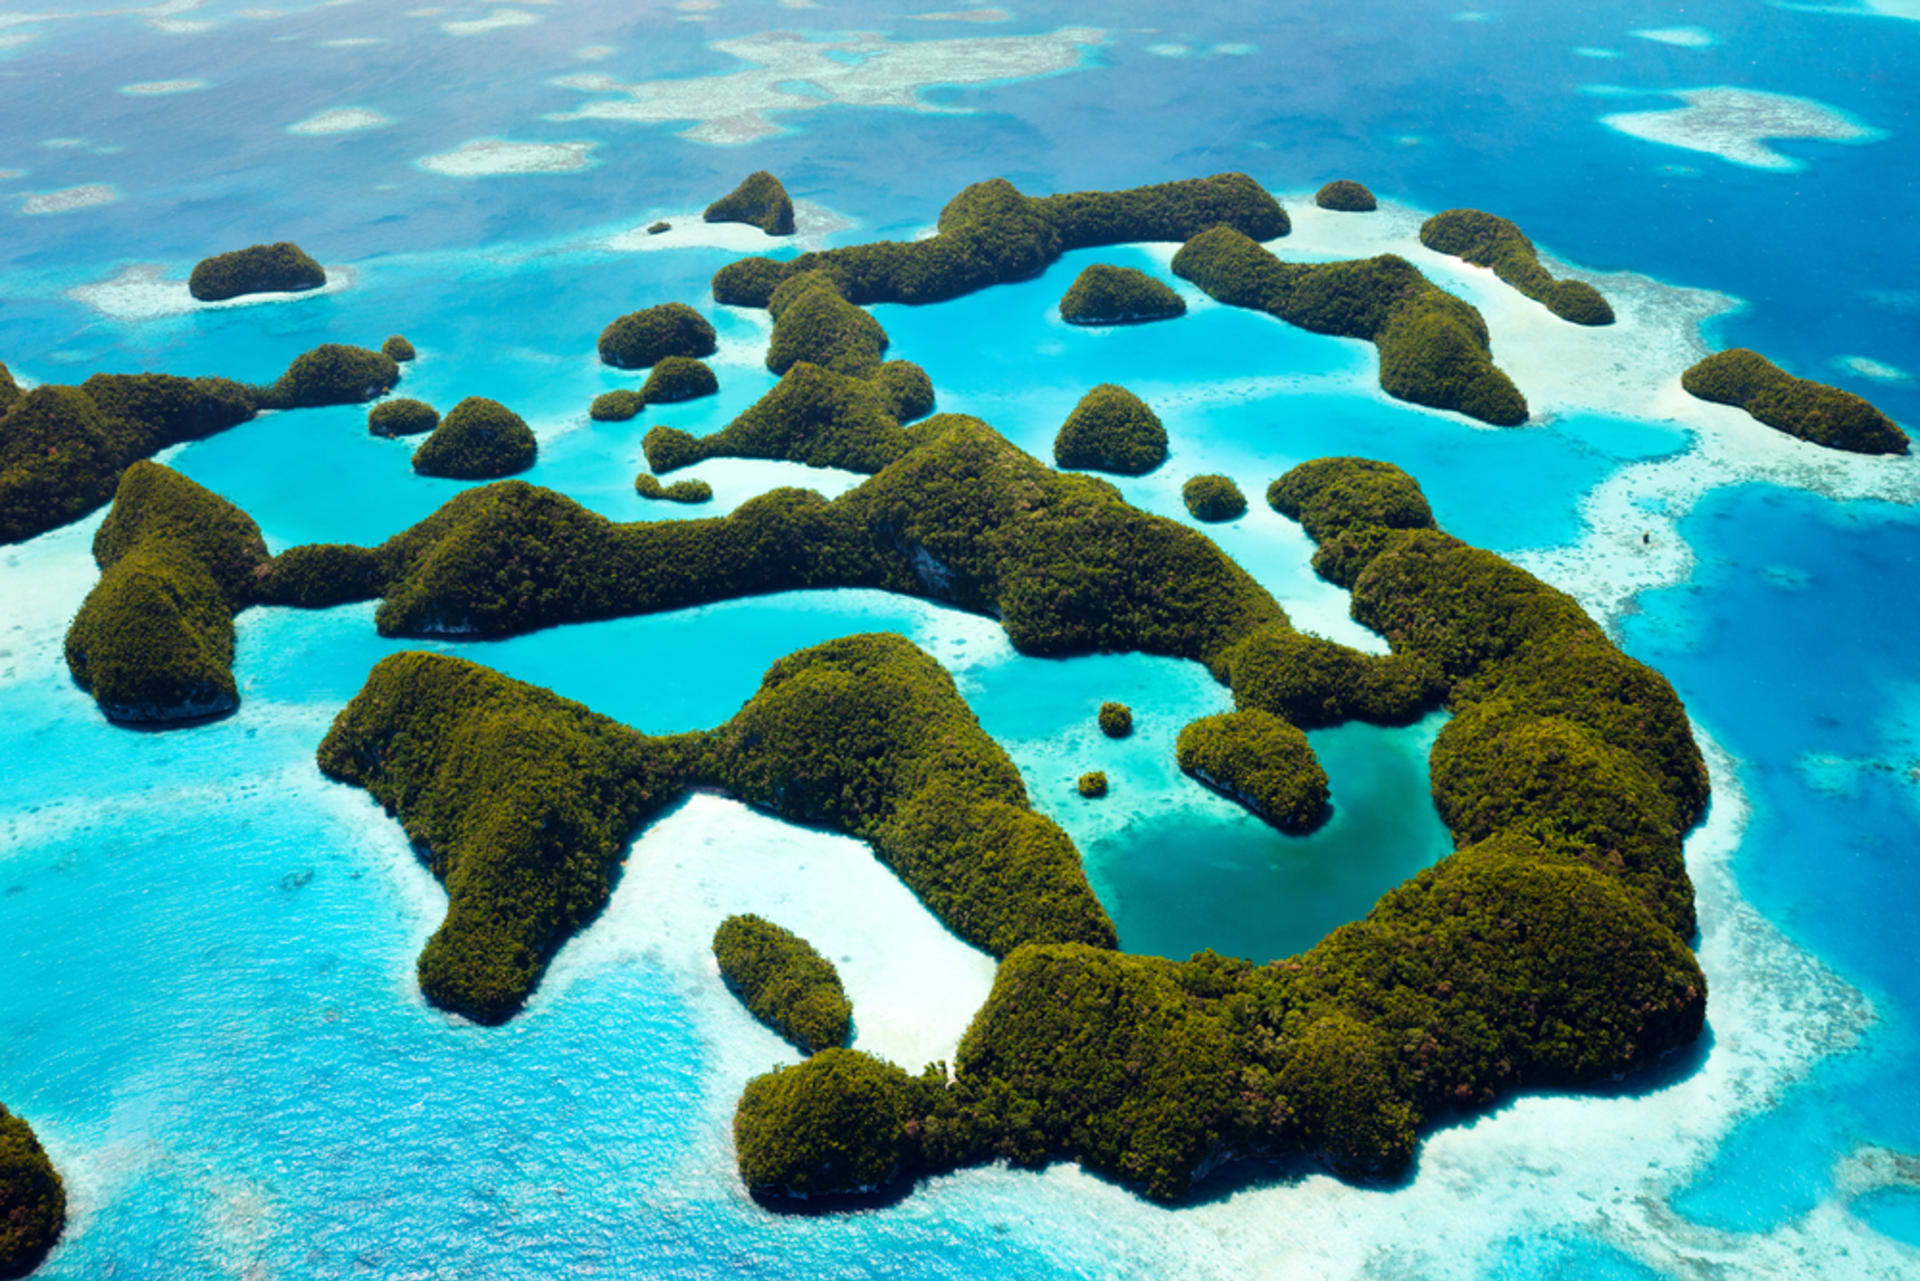 Republiku Palau tvoří přes 300 ostrovů